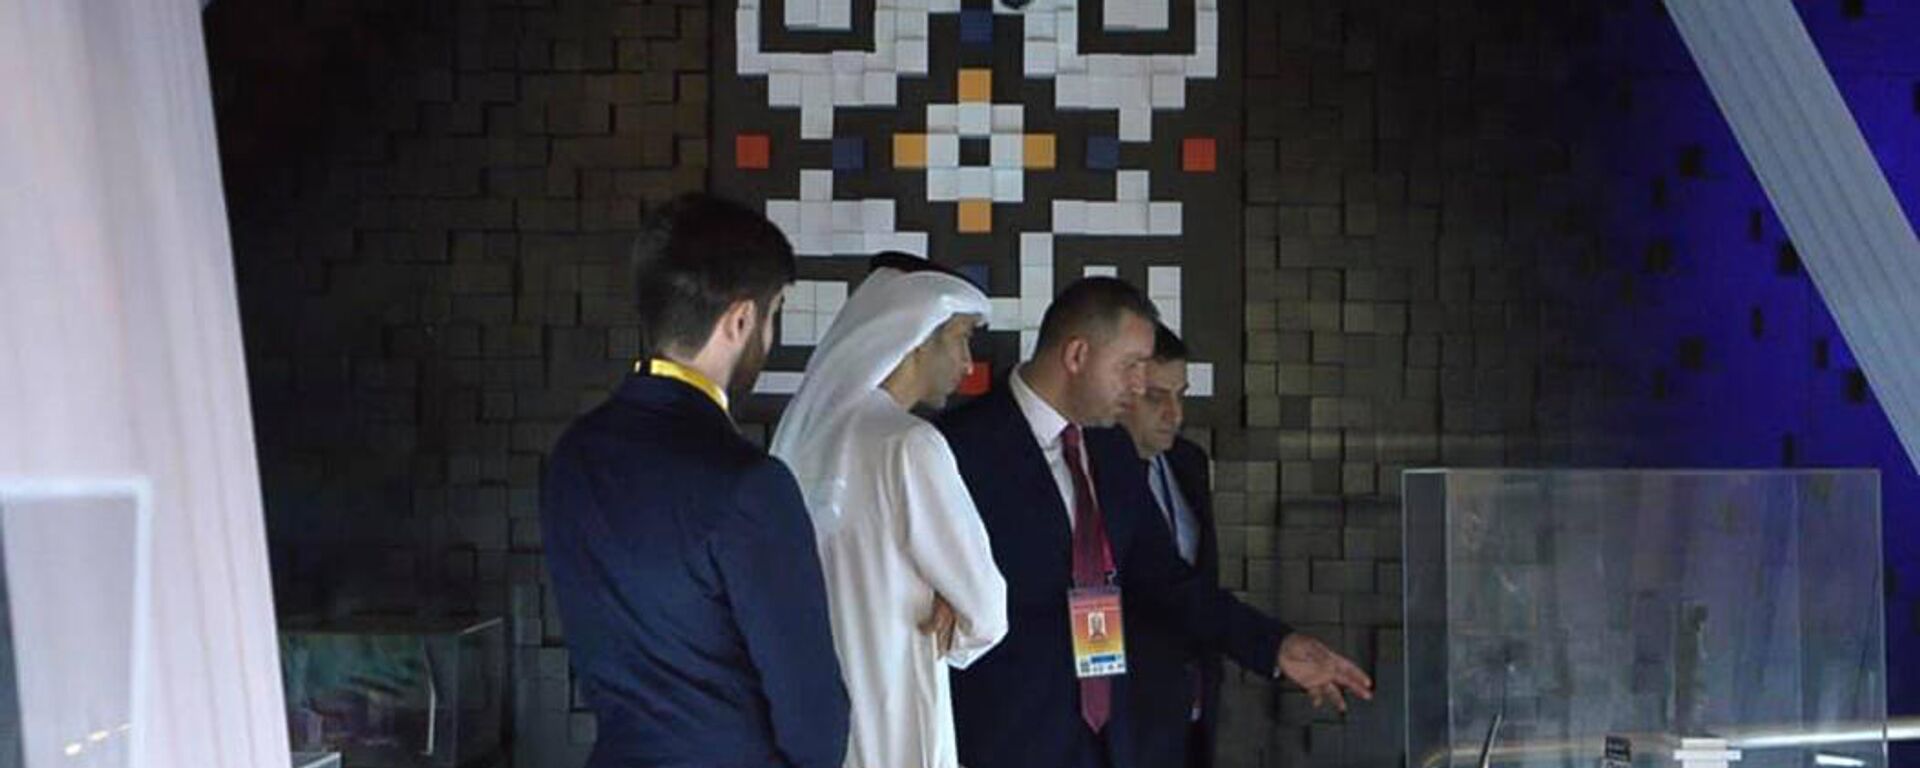 Министры внешней торговли ОАЭ Тани бин Ахмед Аль-Зеюди и экономики Армении Ваган Керобян в армянском павильоне на EXPO 2020 Dubai (1 октября 2021). Дубай - Sputnik Армения, 1920, 02.10.2021